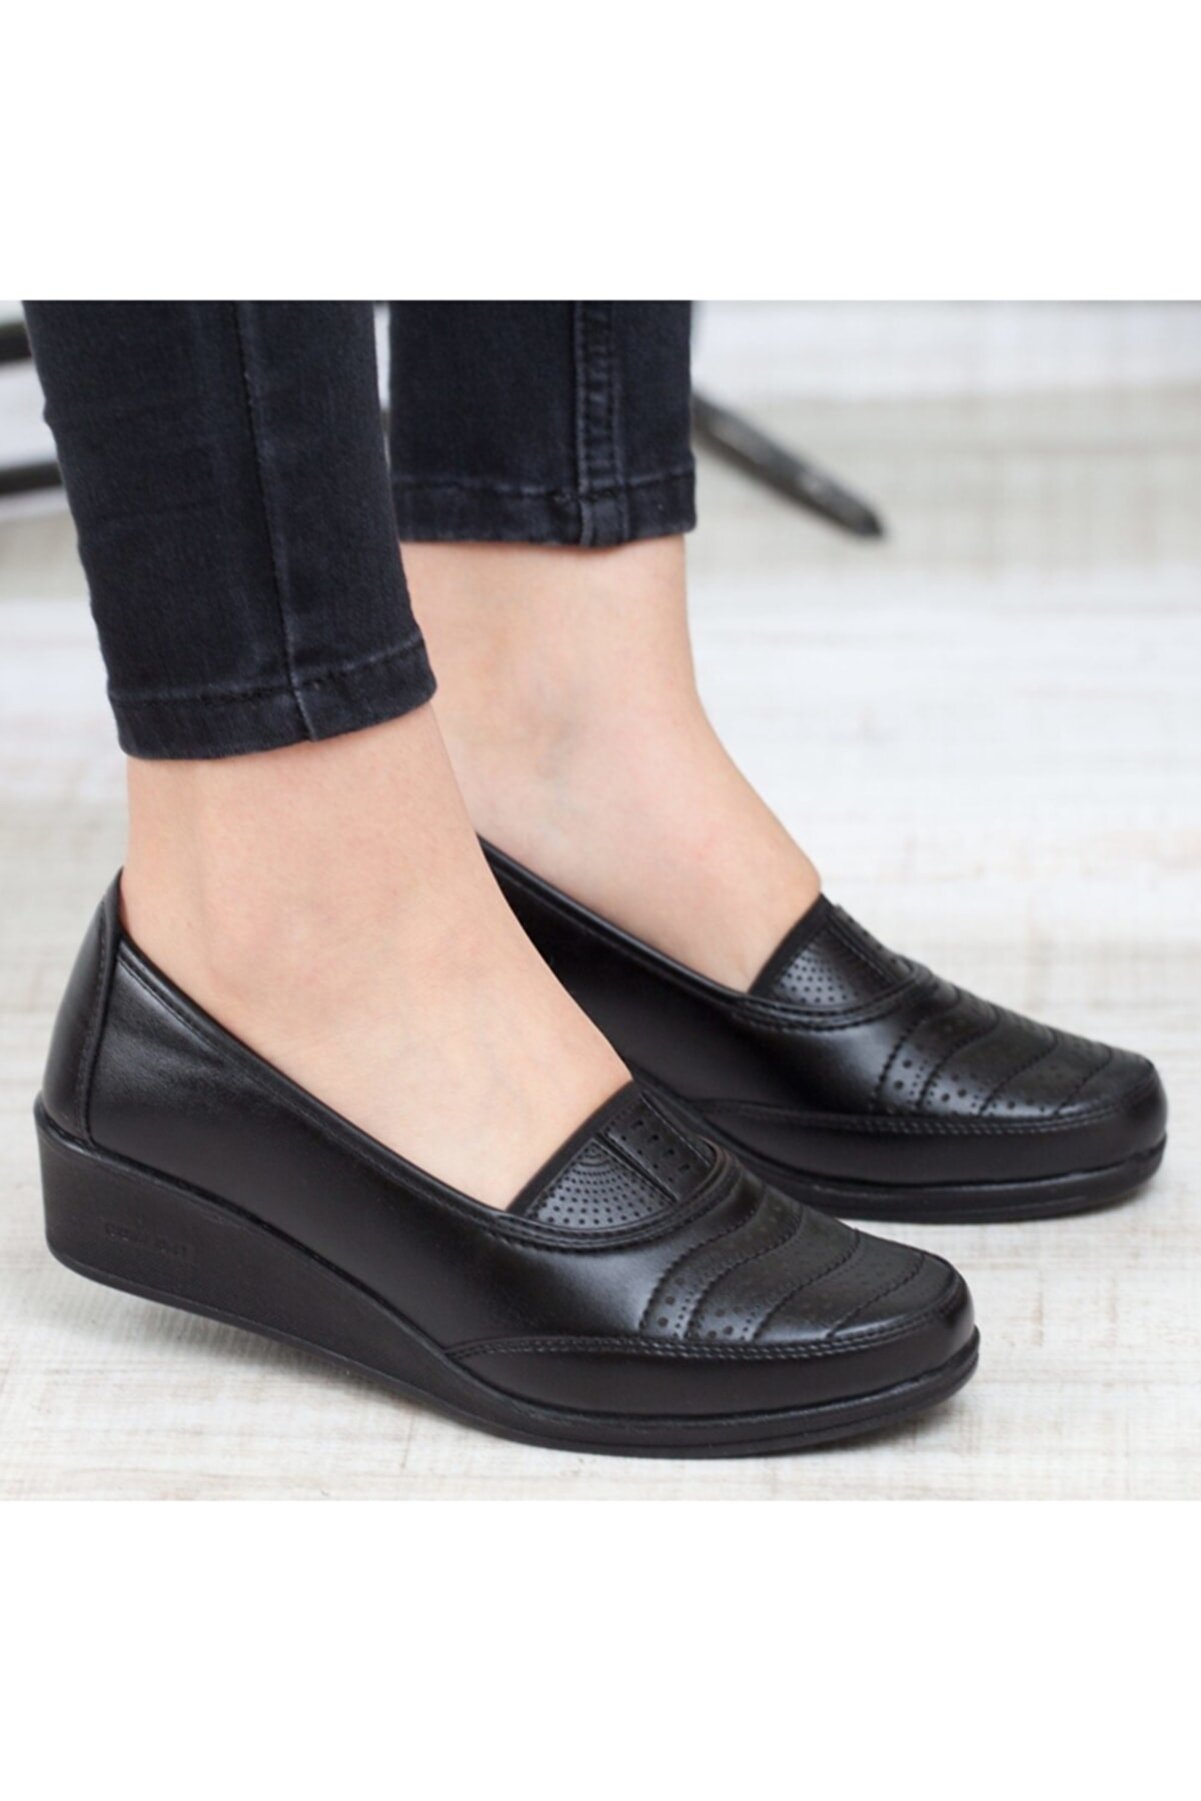 KAOF SHOES Kadın Ayzen Siyah Tam Ortopedik Babet Ayakkabı Anne Ayakkabı Günlük Ayakkabı Klasik Ayakkabı Casual